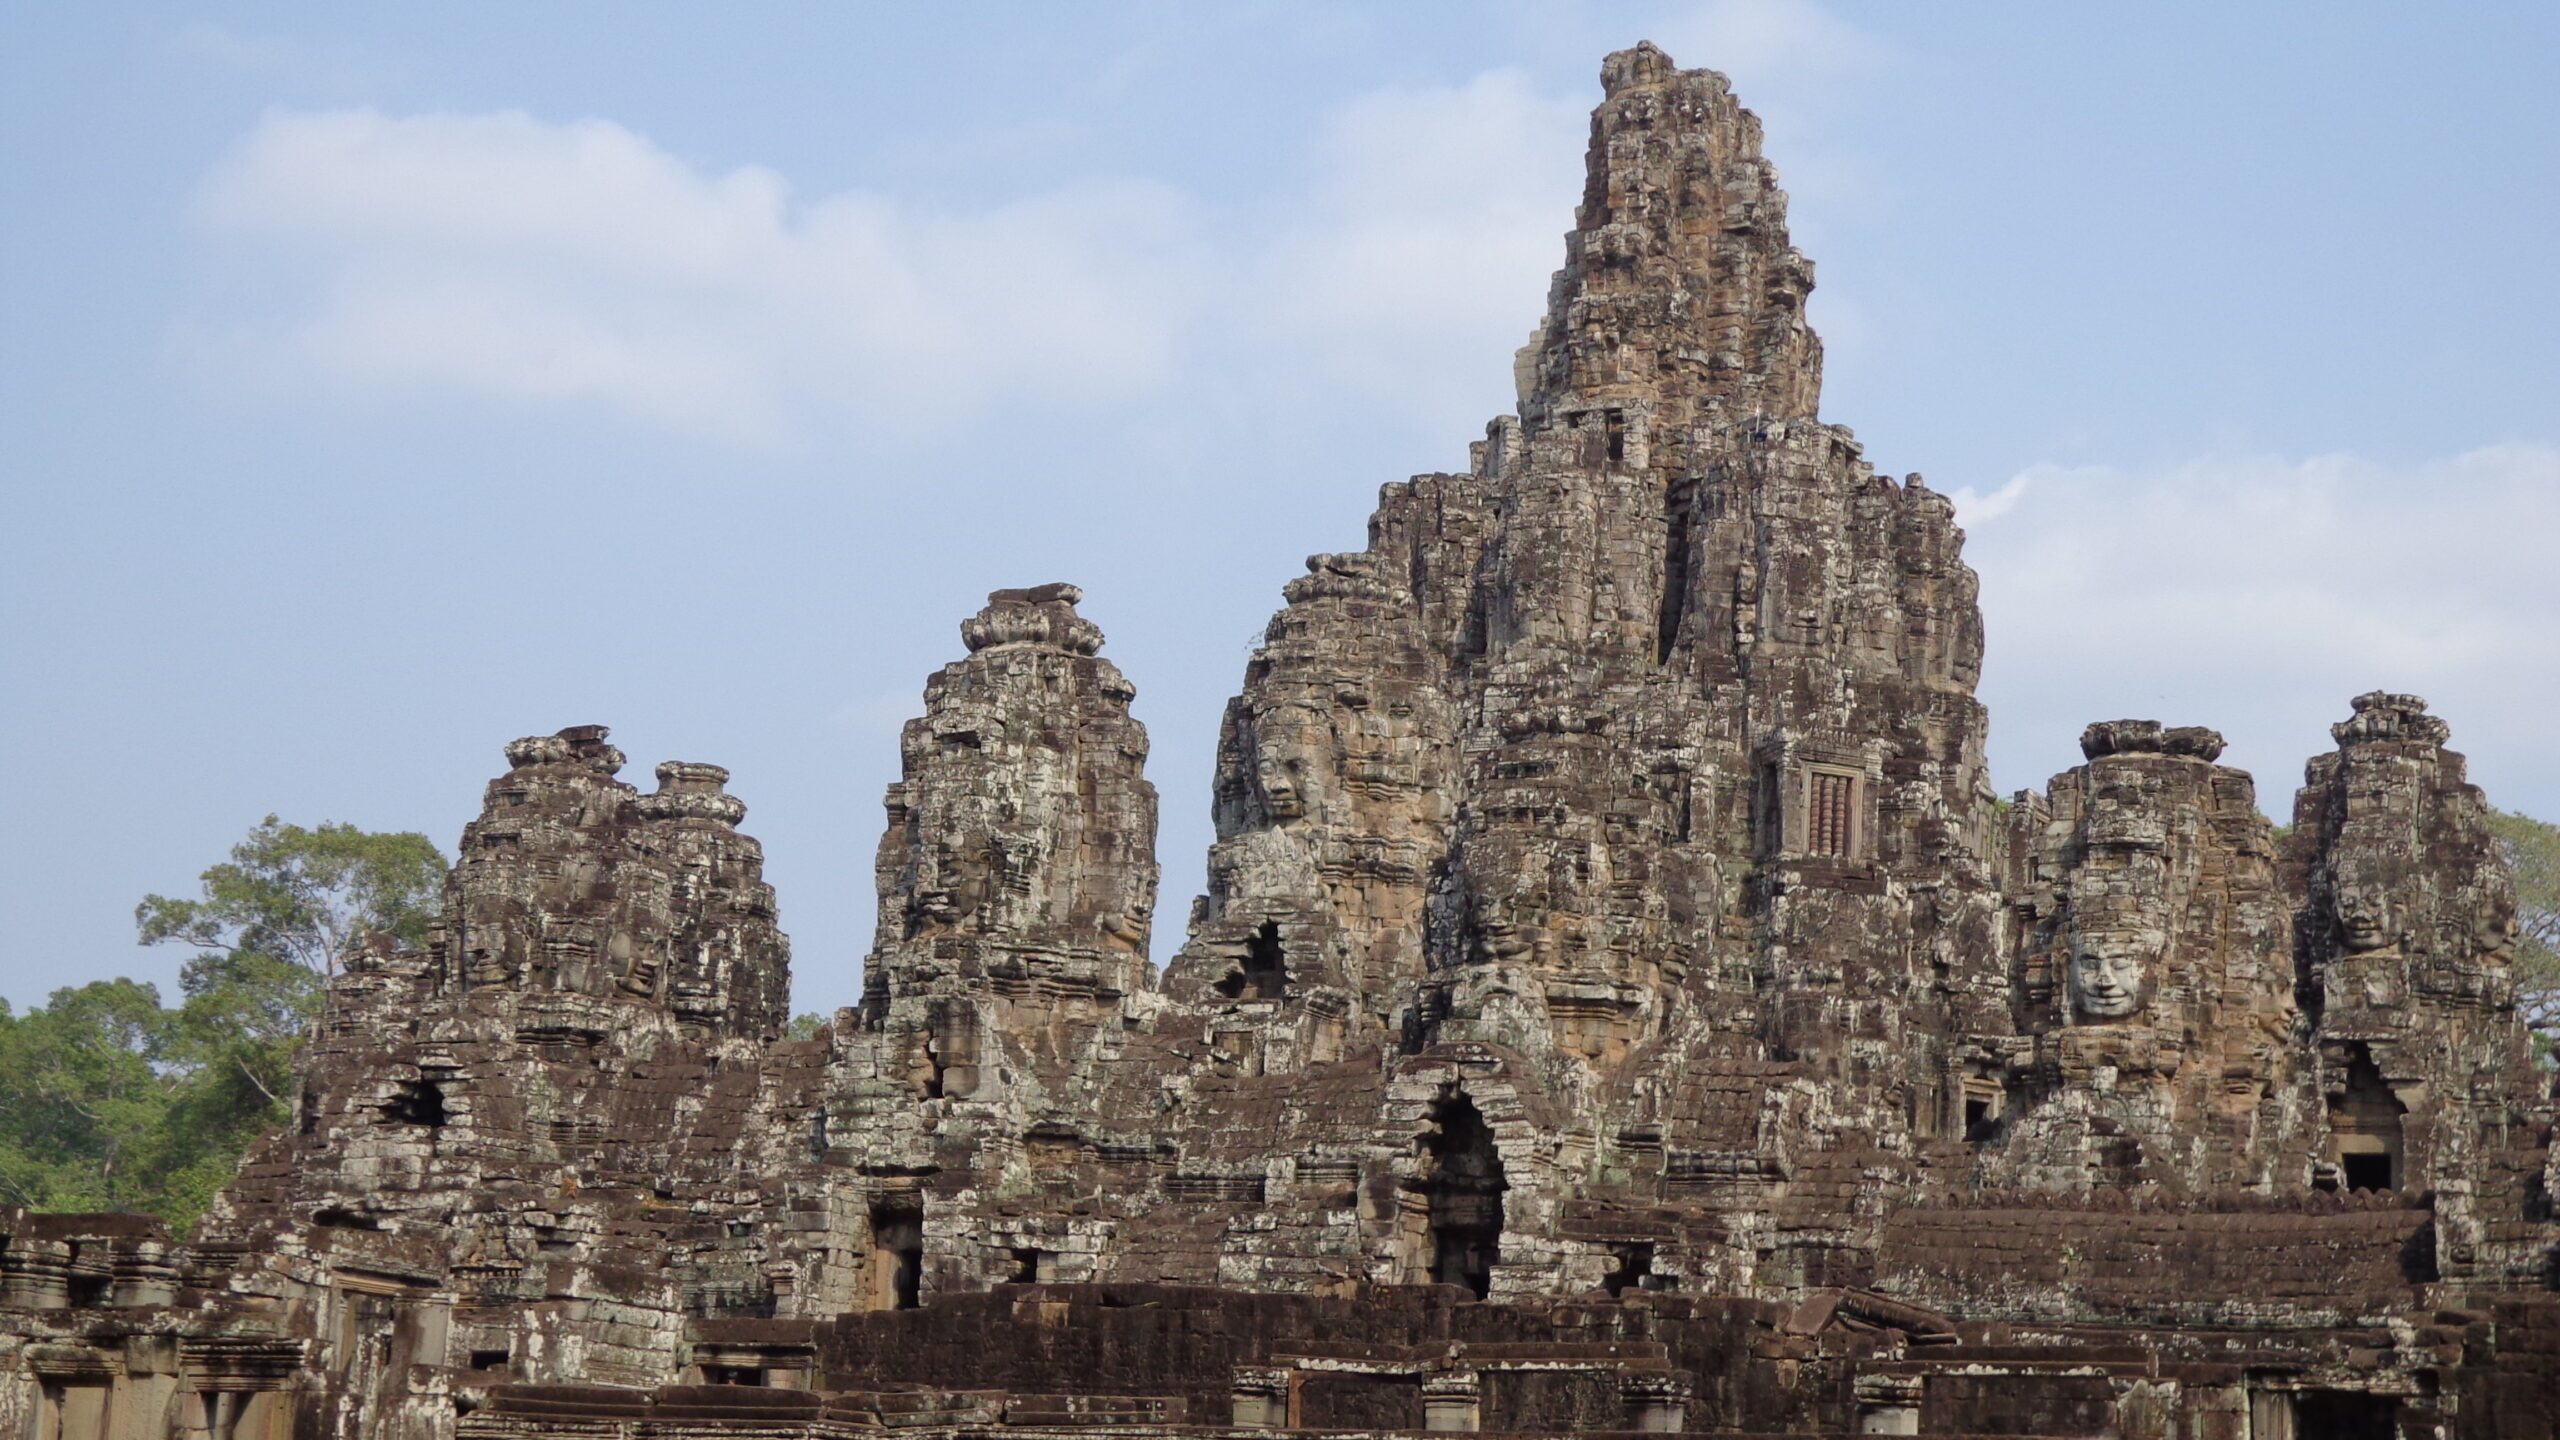 Ingin berlibur ke Siem Reap, Kamboja?  Inilah yang perlu Anda ketahui